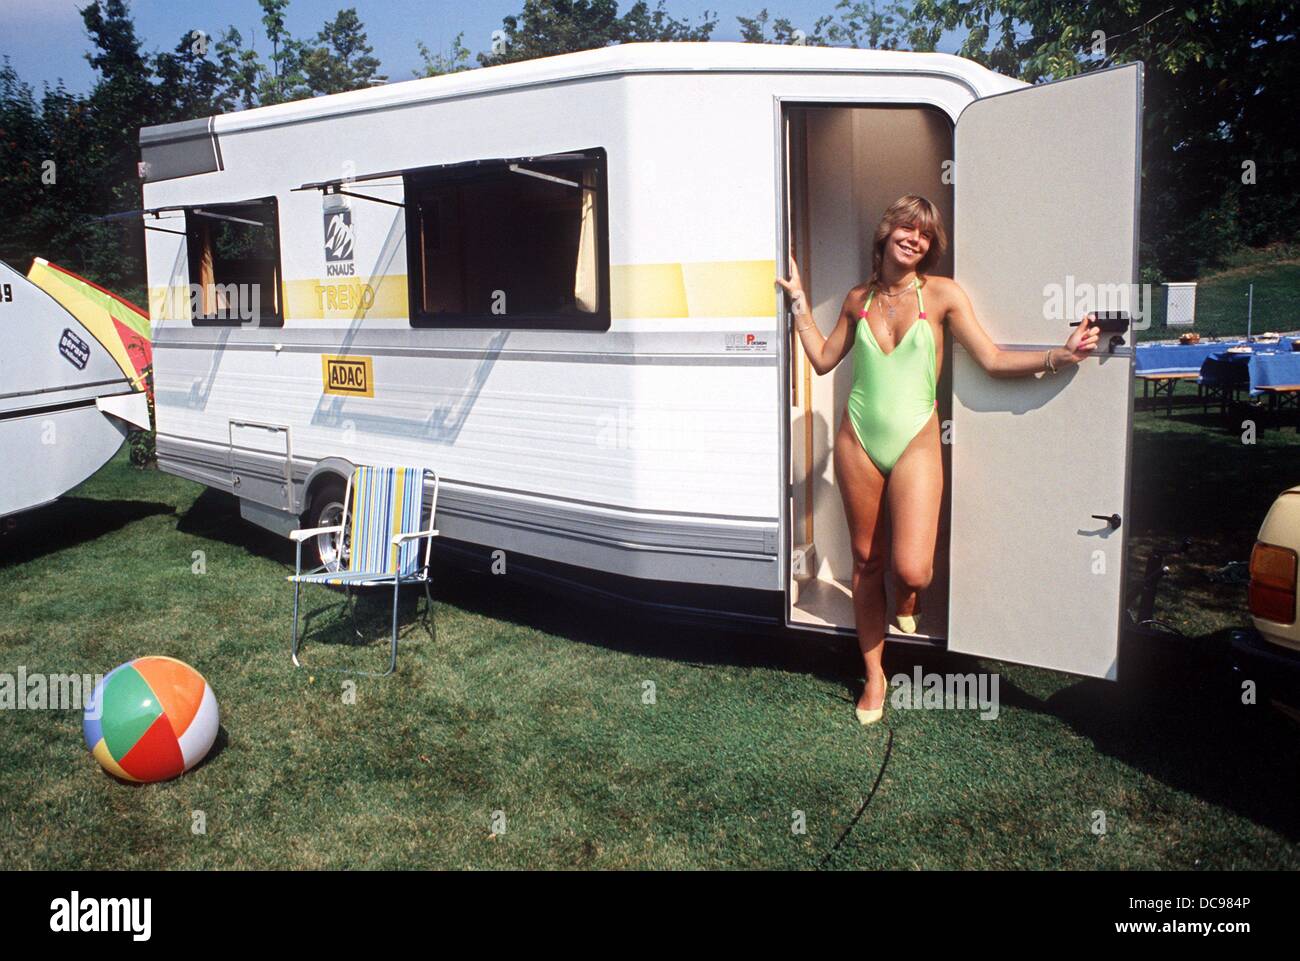 Une jeune femme en maillot de bain se présente dans une caravane nouvellement présenté, photographié en août 1986. Banque D'Images